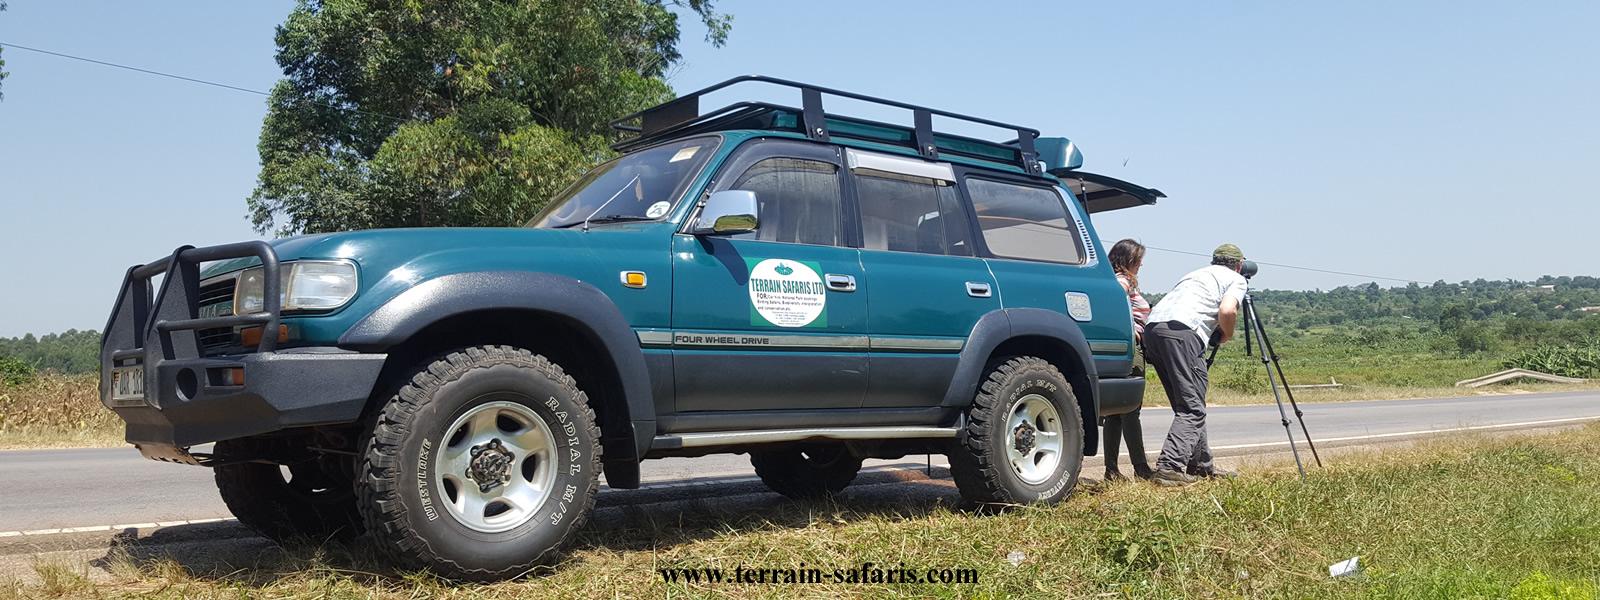 4x4 African Rentals - Car Rentals Uganda & Rwanda - Safari Car Hire in East Africa - Uganda Wildlife Safaris - https://terrain-safaris.com